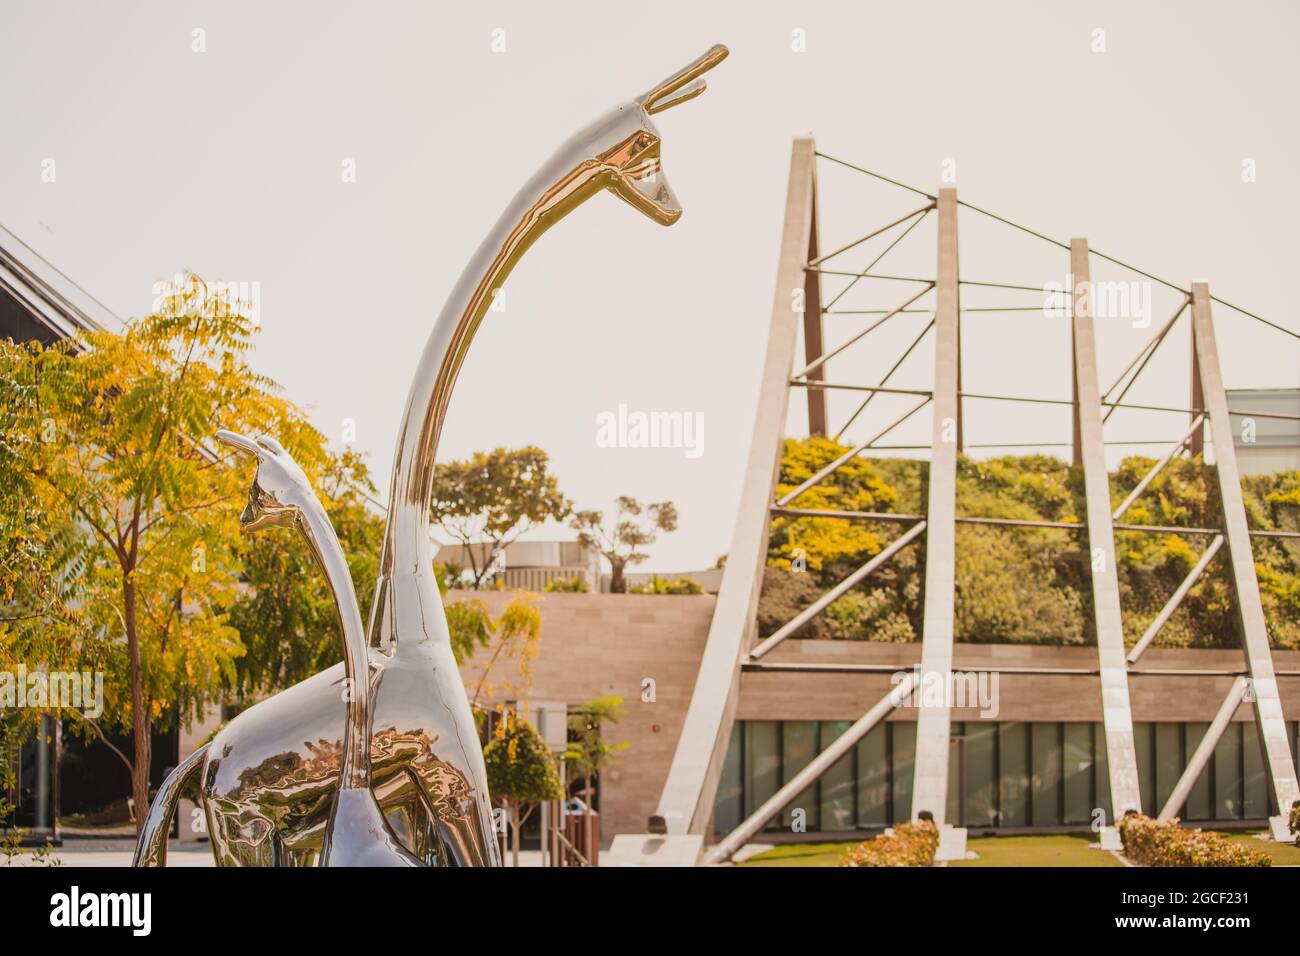 24 février 2021, Dubaï, Émirats arabes Unis : statues métalliques de deux girafes au parc du safari de Dubaï Banque D'Images